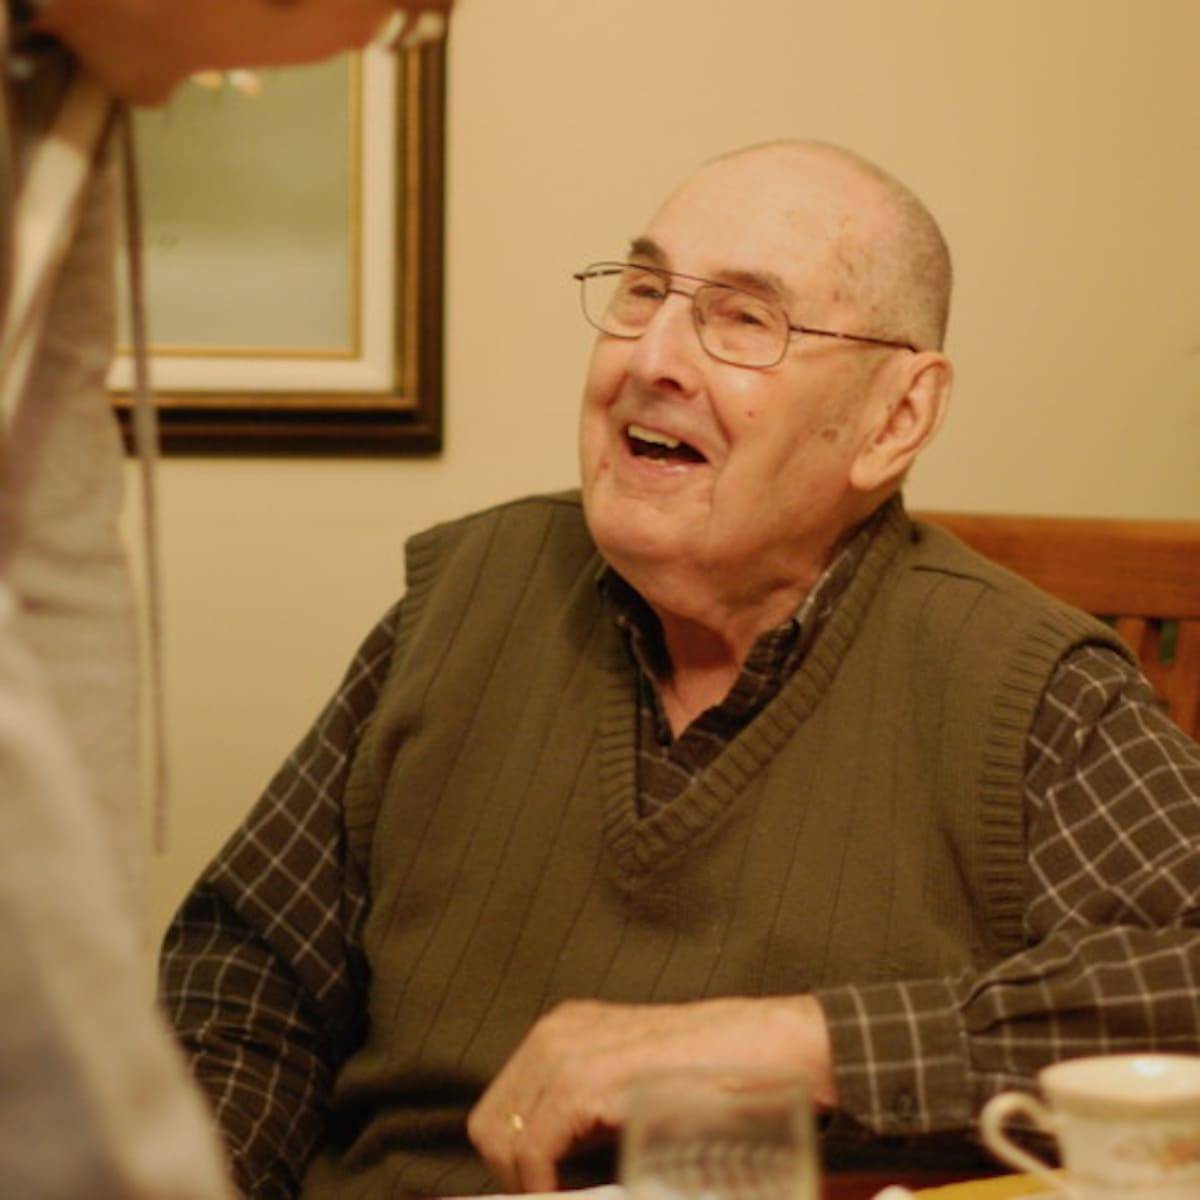 Elderly man laughing.